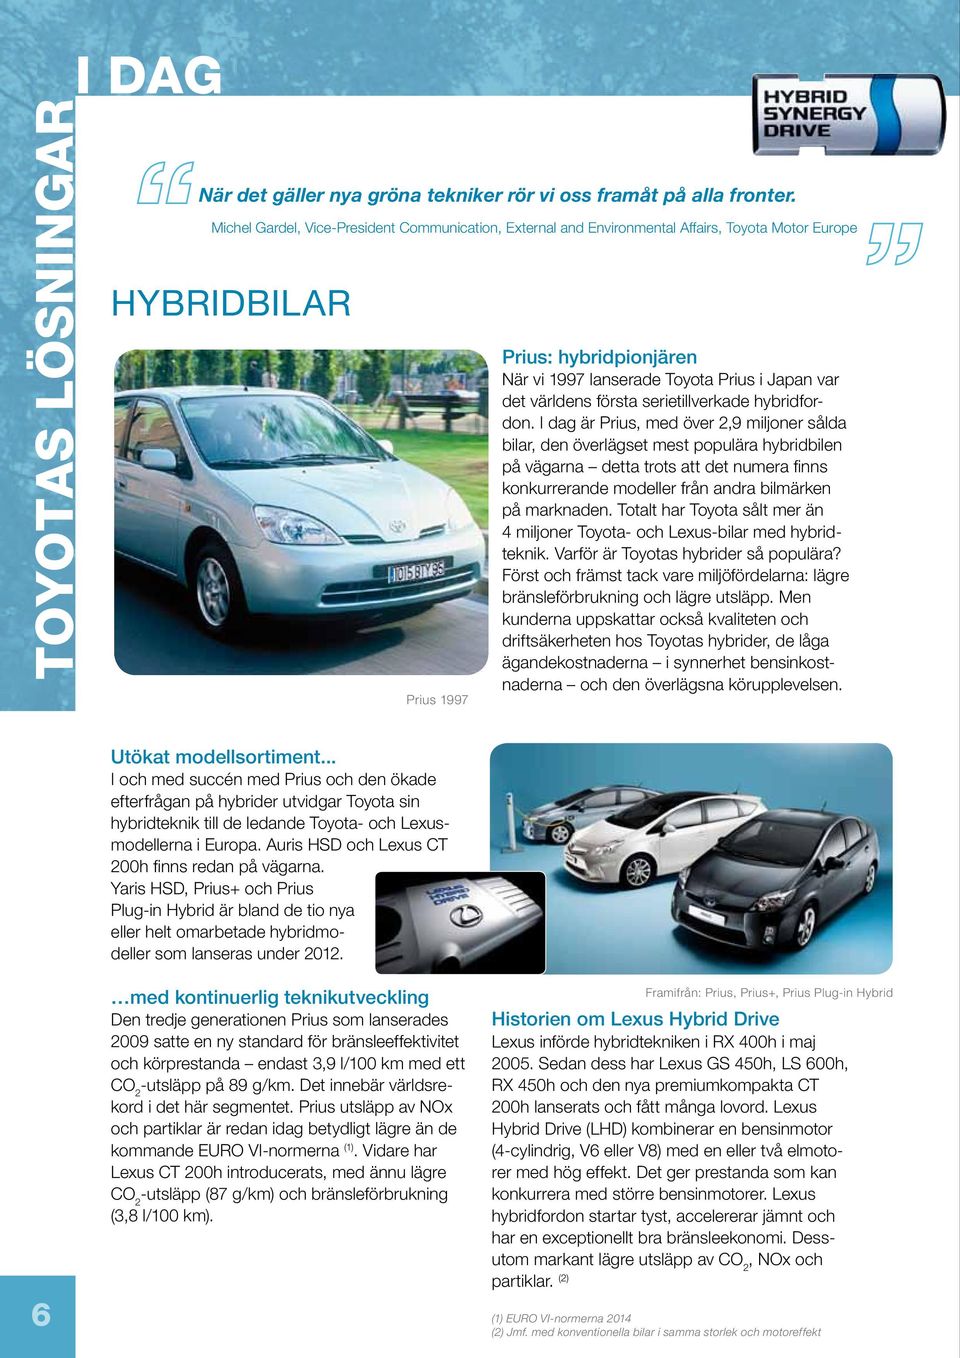 världens första serietillverkade hybridfordon.